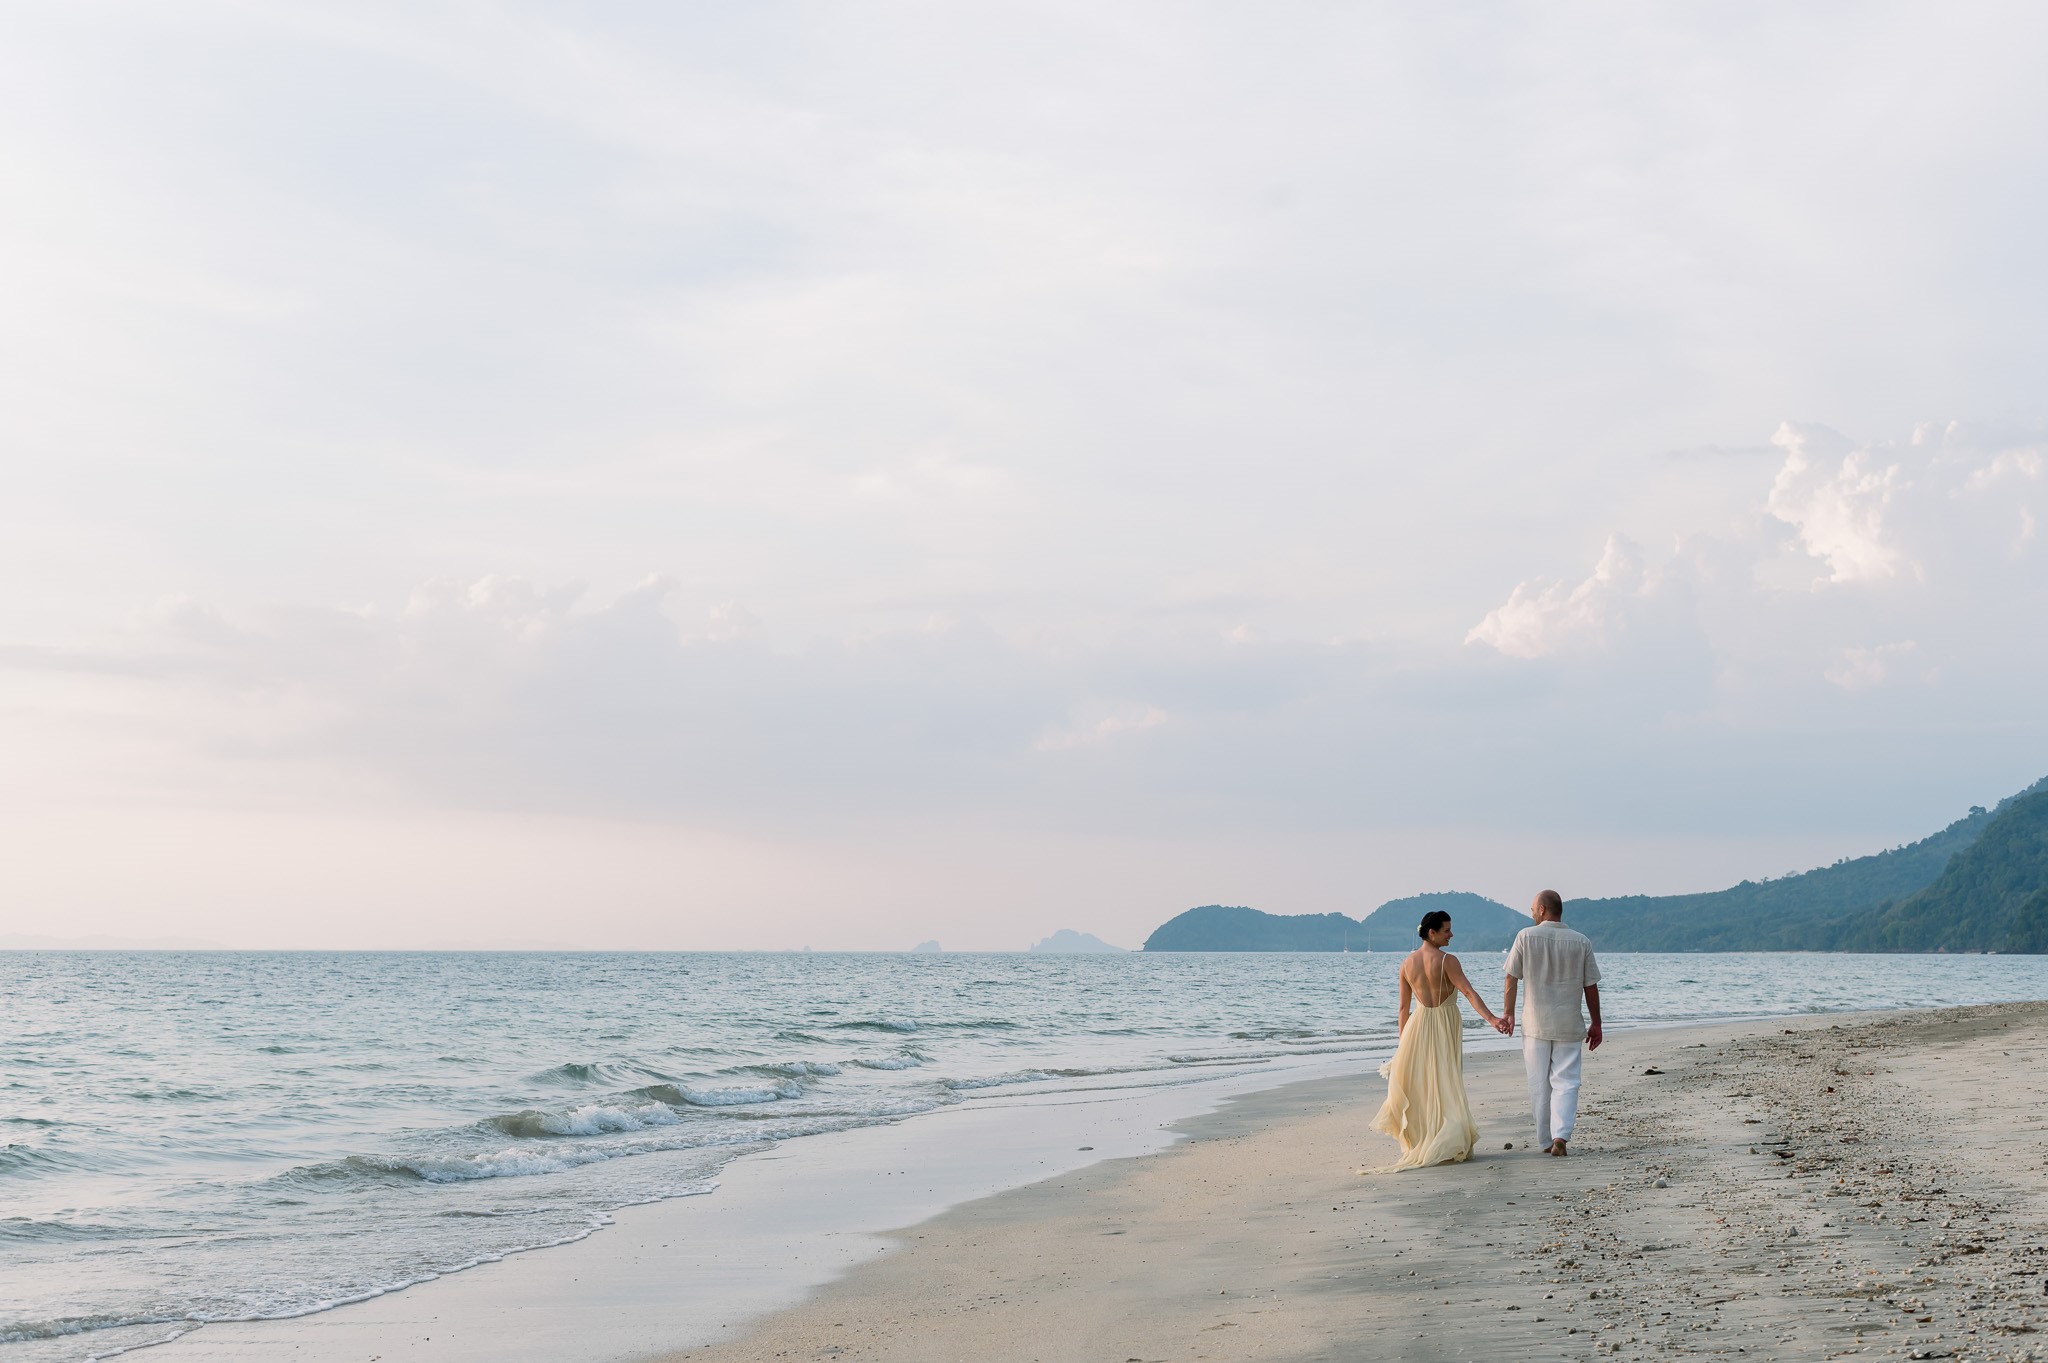 Wedding Couple Walking on Beach